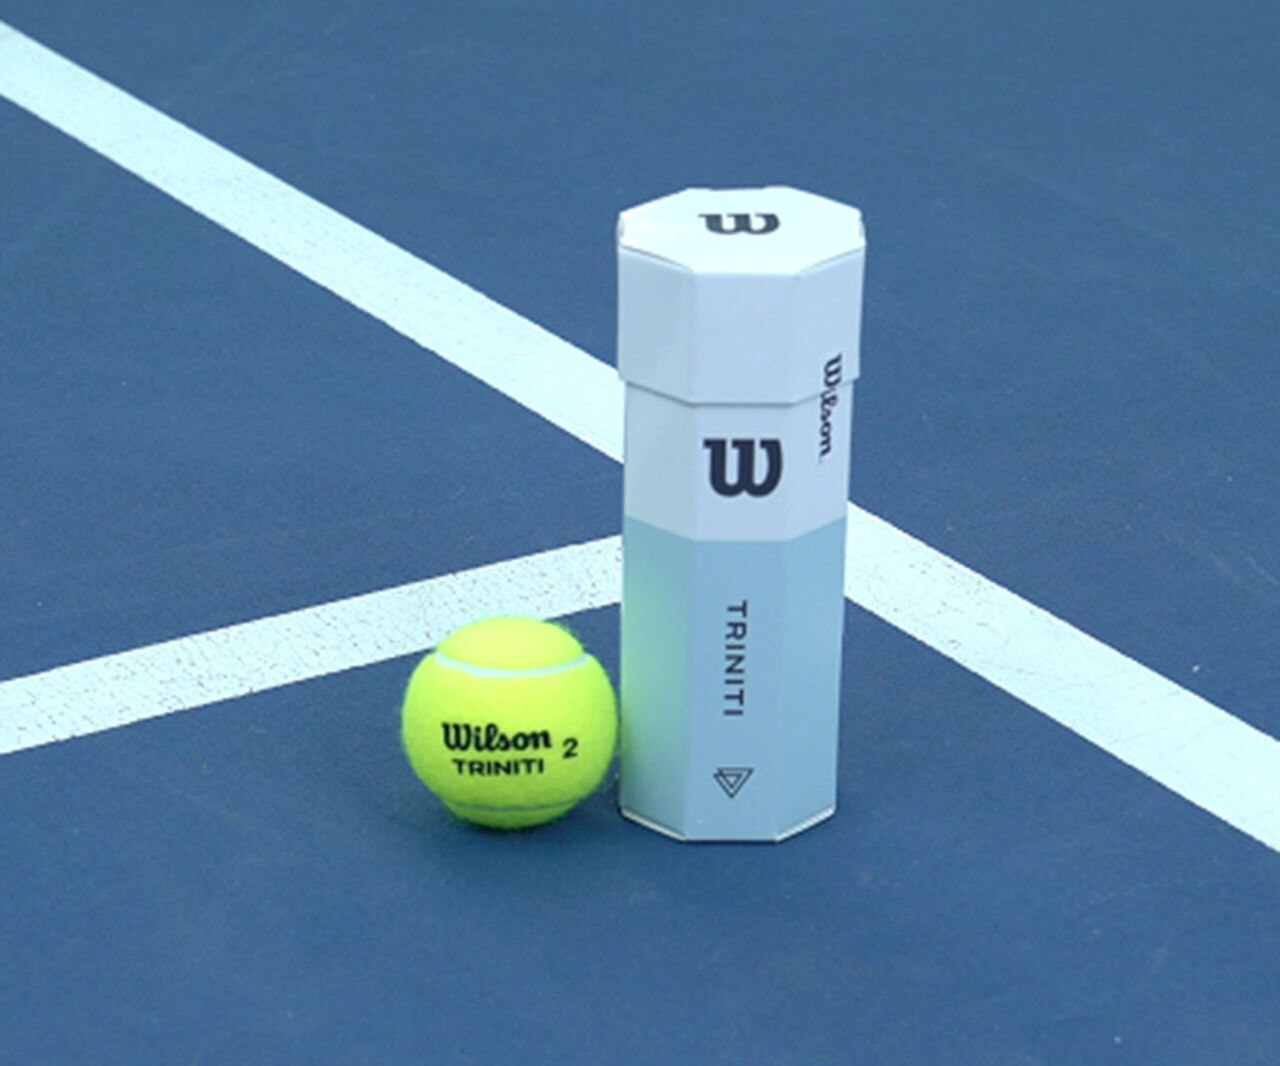 wilson-tennis-ball-1366x1138.jpg